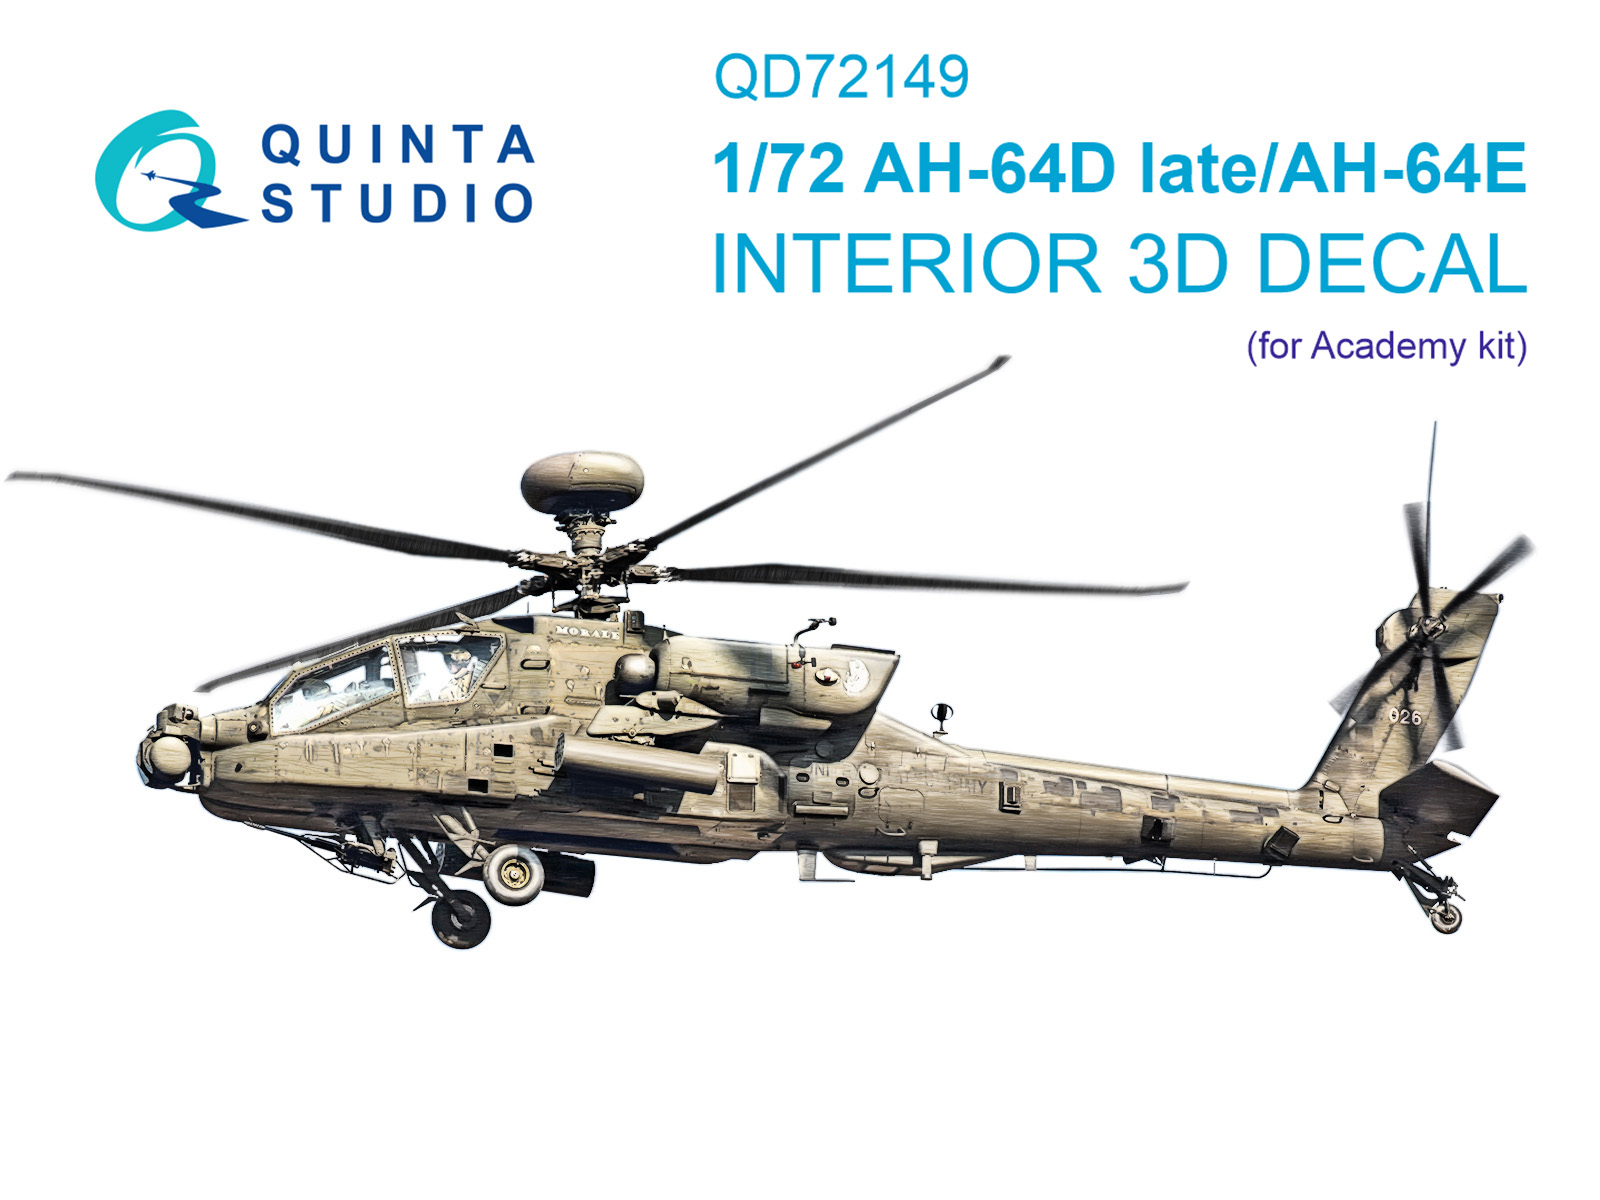 3D Декаль интерьера кабины AH-64D поздний/AH-64E (Academy)